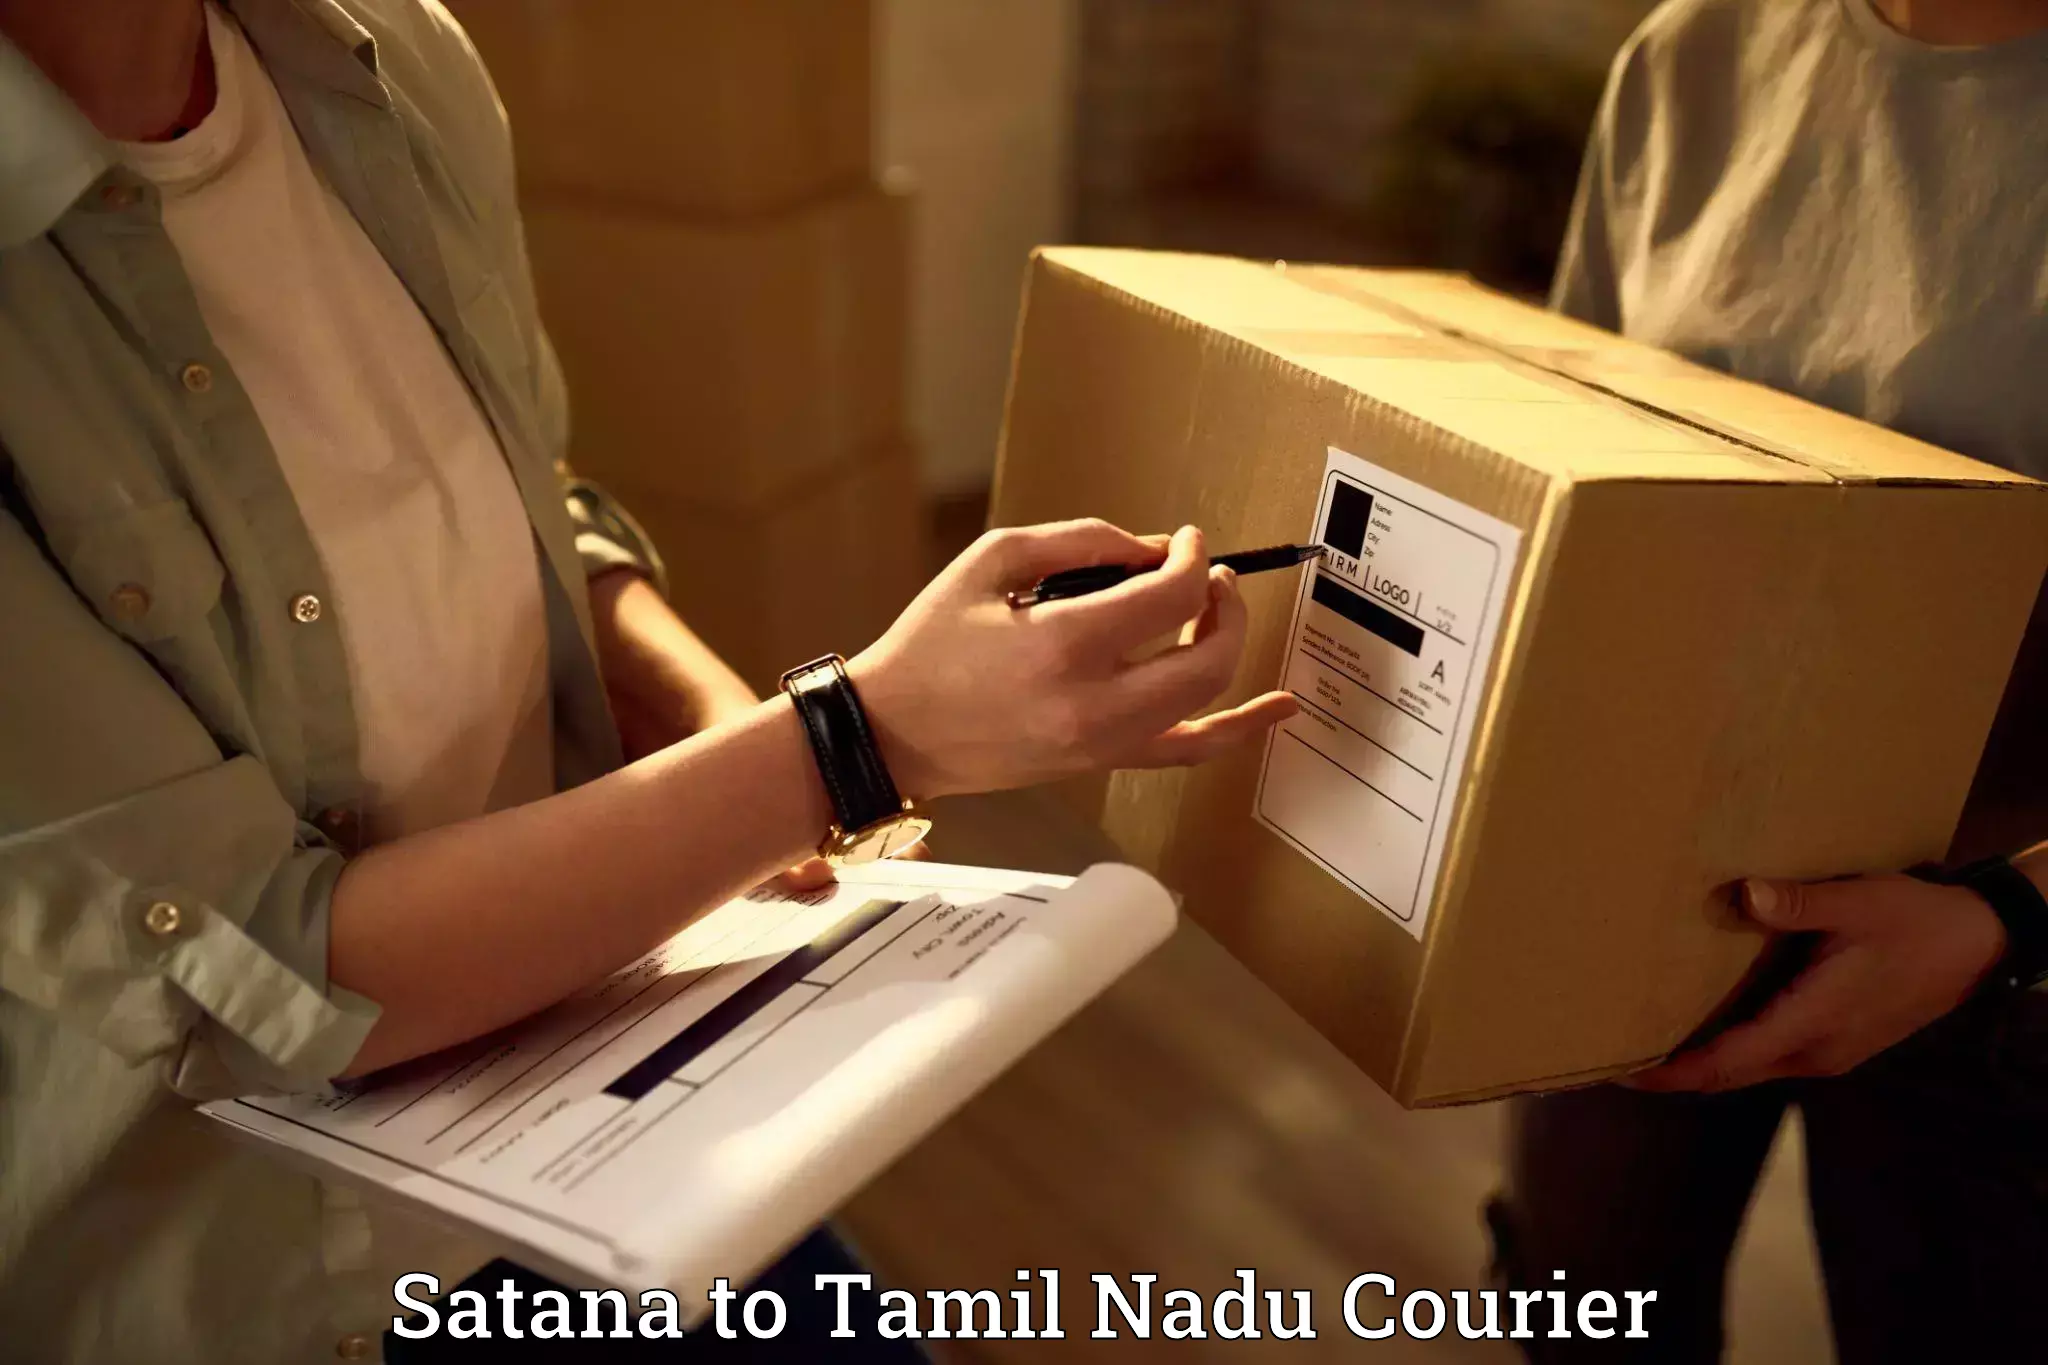 Efficient moving company Satana to Tamil Nadu